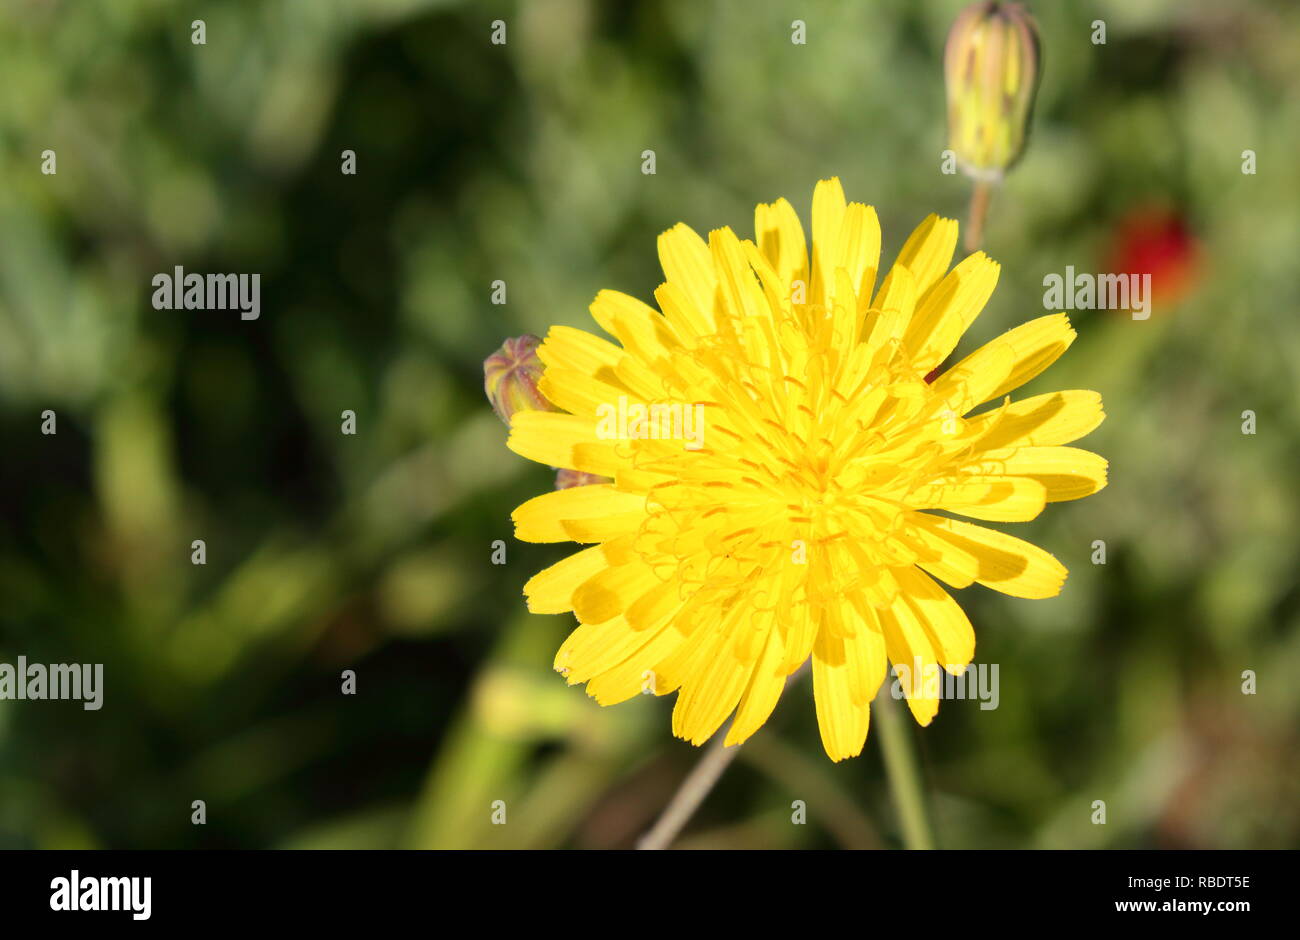 Flor Amarilla en primer plano. Gelbe Blume im Vordergrund. Stockfoto